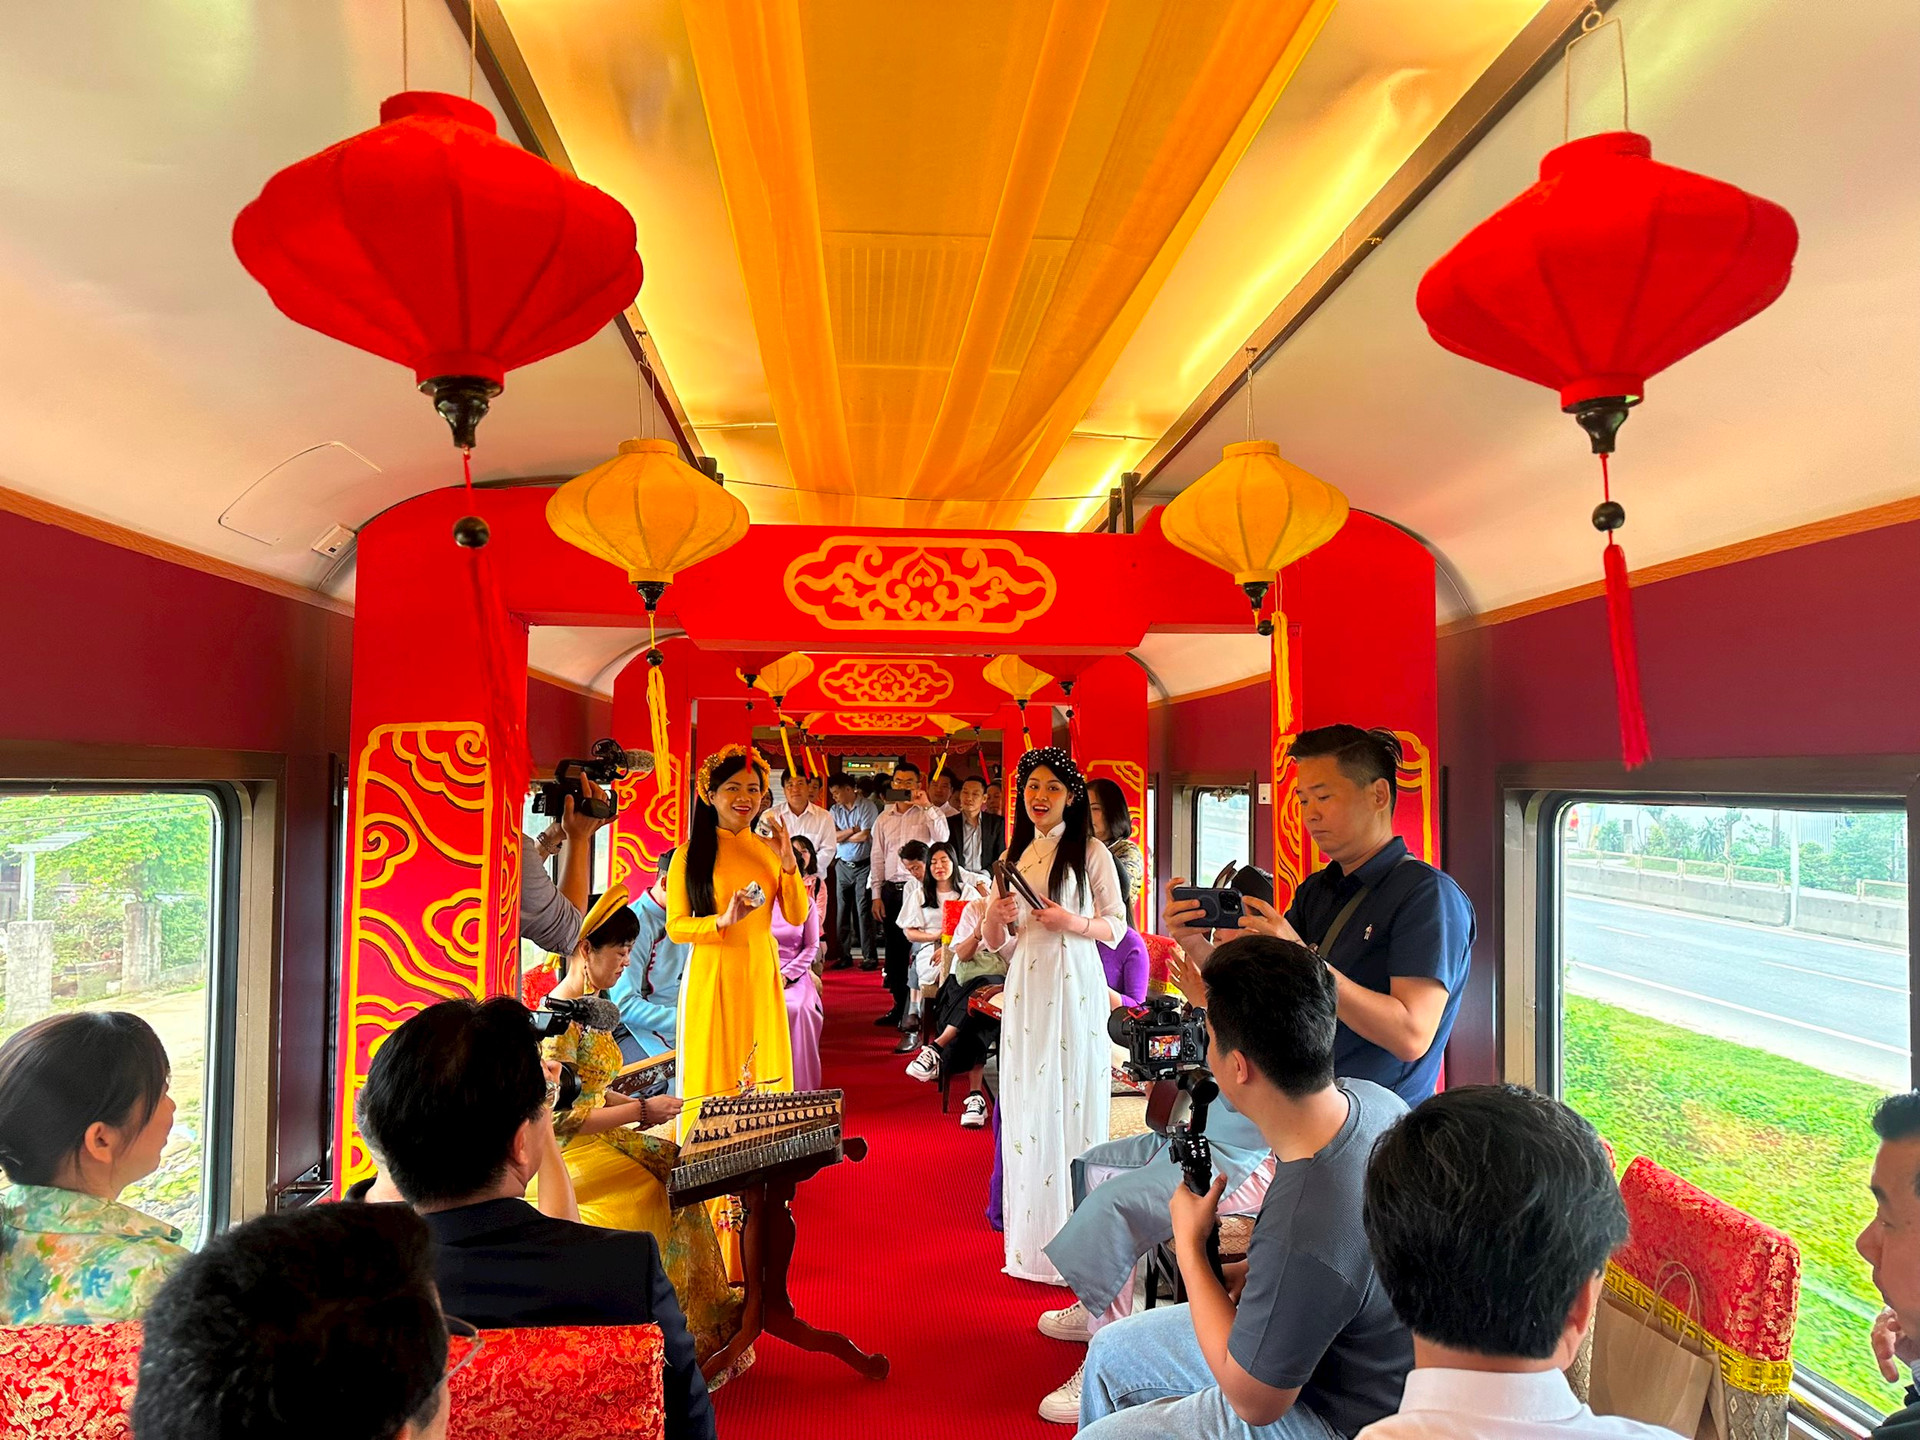 Chuyến tàu di sản qua đường sắt đẹp nhất Việt Nam, vé hơn 100.000 đồng, du khách nhận xét: Rất đáng thử!